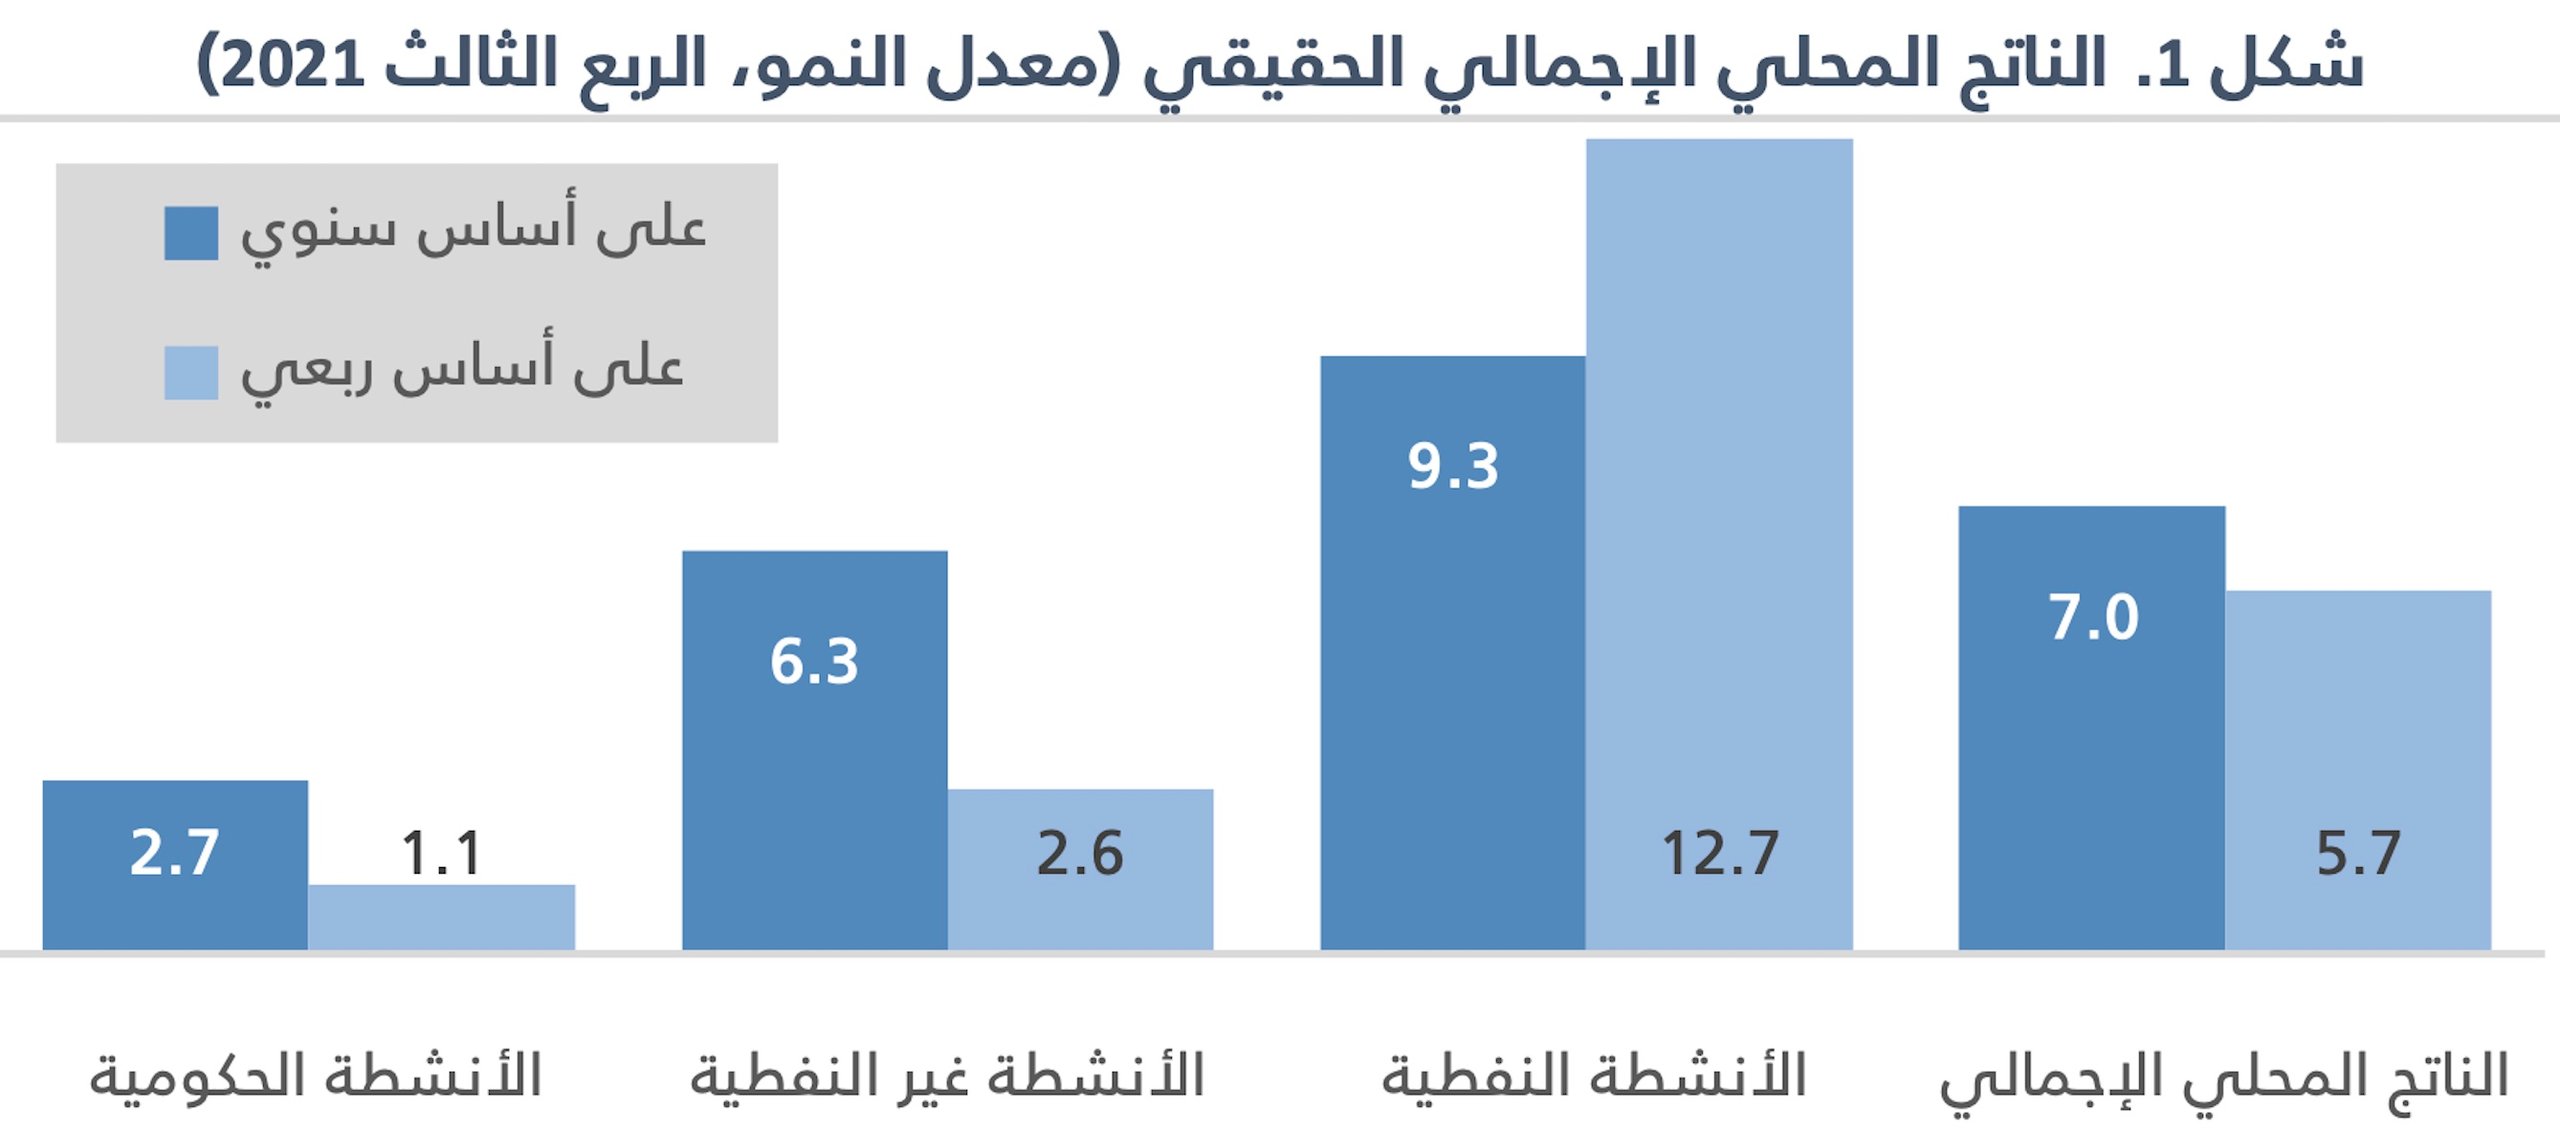 اقتصاد السعودية يشهد أعلى معدل نمو فصلي في 9 سنوات